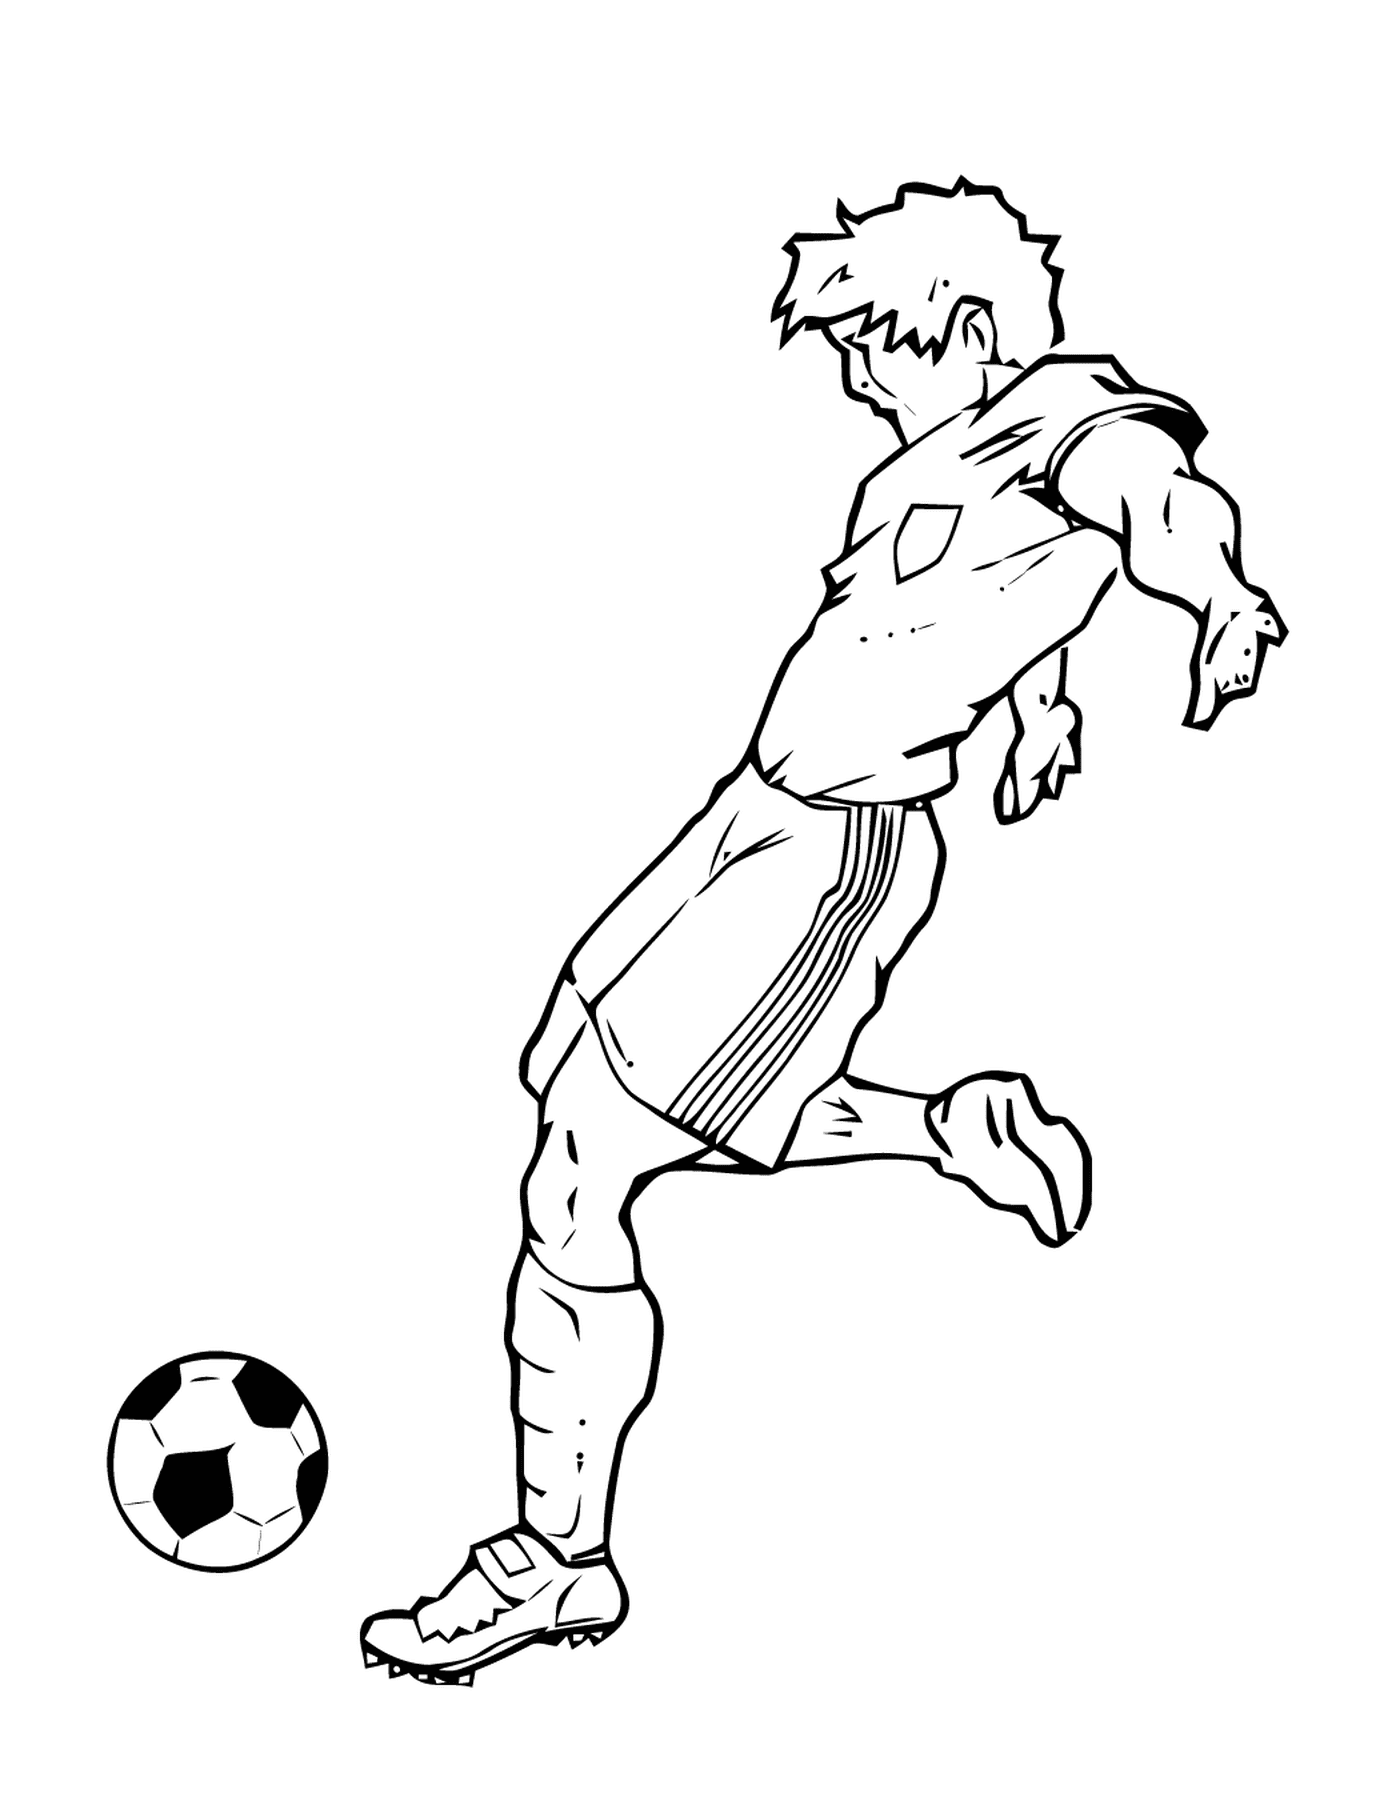  Esporte, jogador de futebol batendo uma bola 